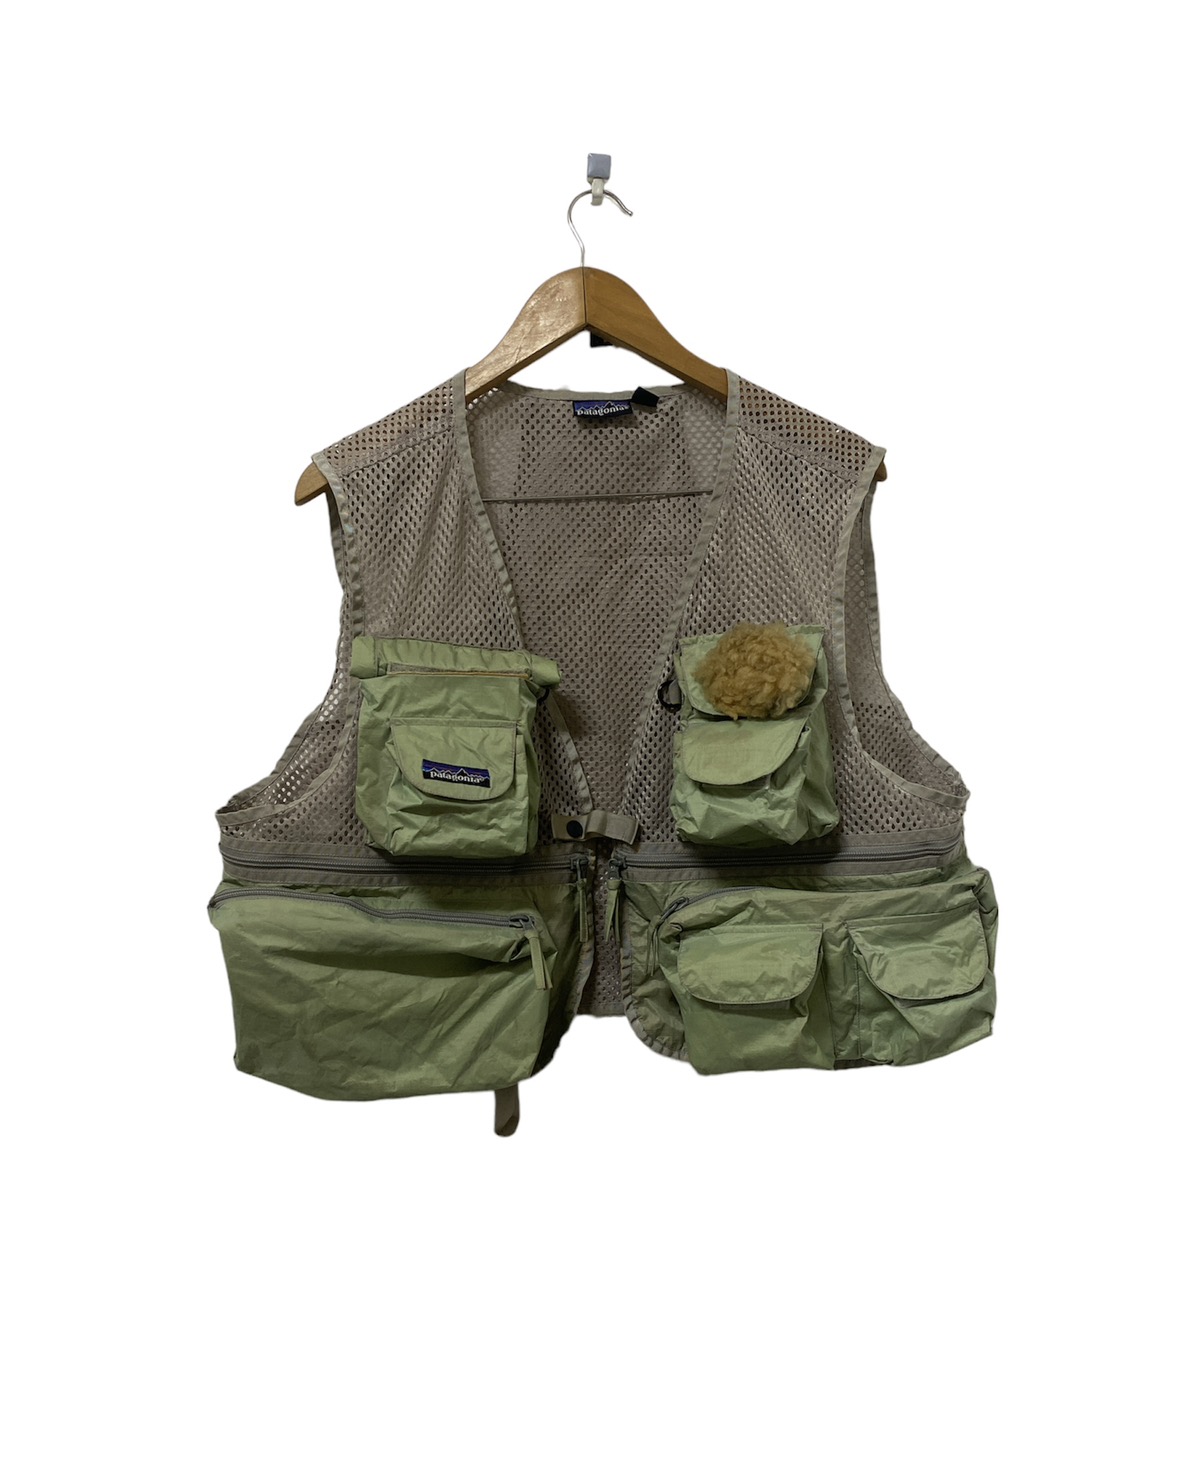 Vintage Patagonia Tactical Utility Vest Multi pocket Design - 1